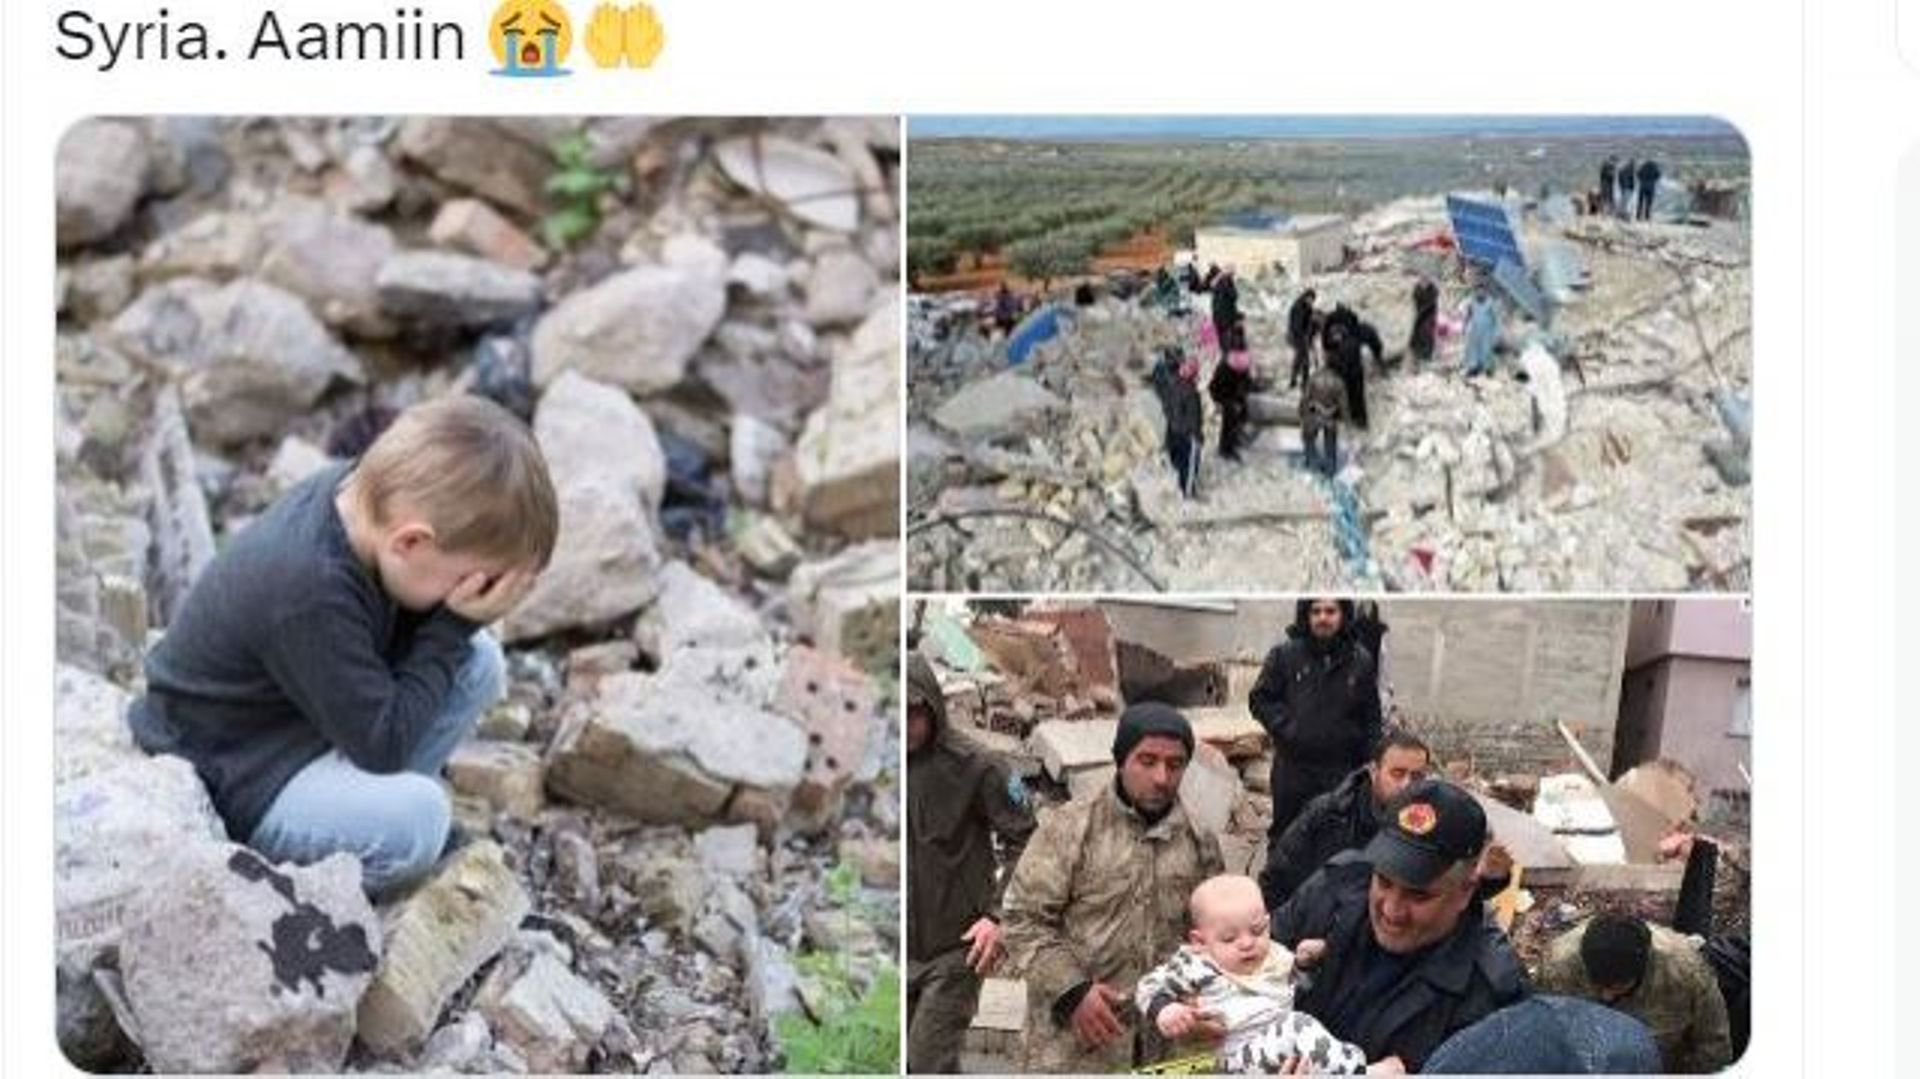 Une photo d’un petit garçon pleurant est présentée comme liée au séisme qui a frappé la Turquie et la Syrie alors qu’elle provient de la banque d’images Shutterstock.